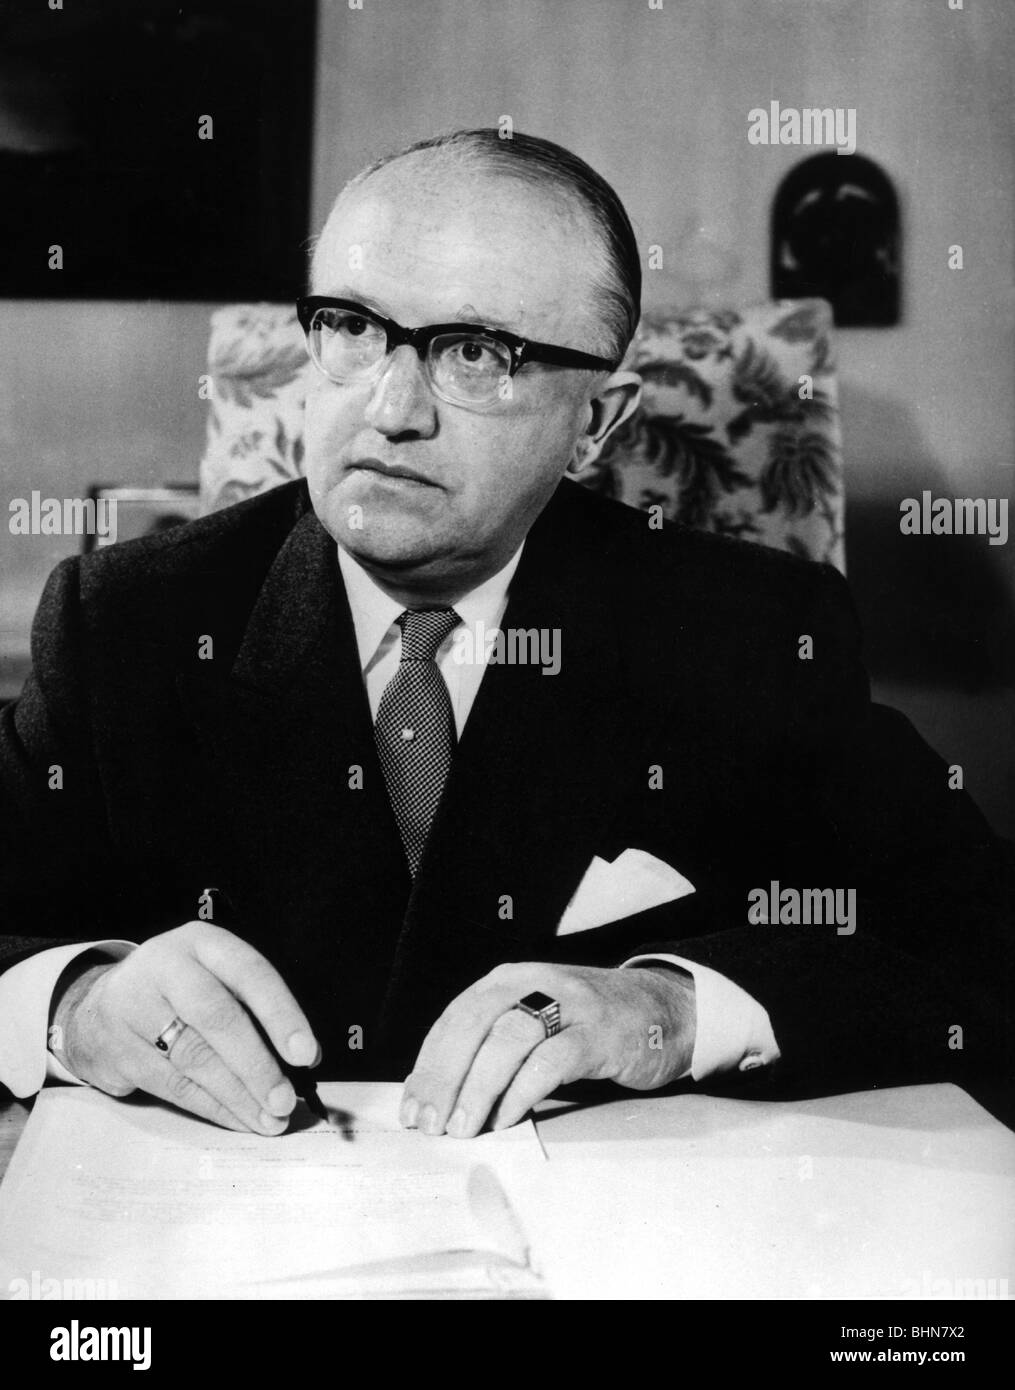 Hallstein, Walter, 17.11.1901 - 29.3.1982, giurista e politico tedesco (CDU), presidente della Commissione europea 1958 - 1967, a metà della durata, circa 1965, Foto Stock